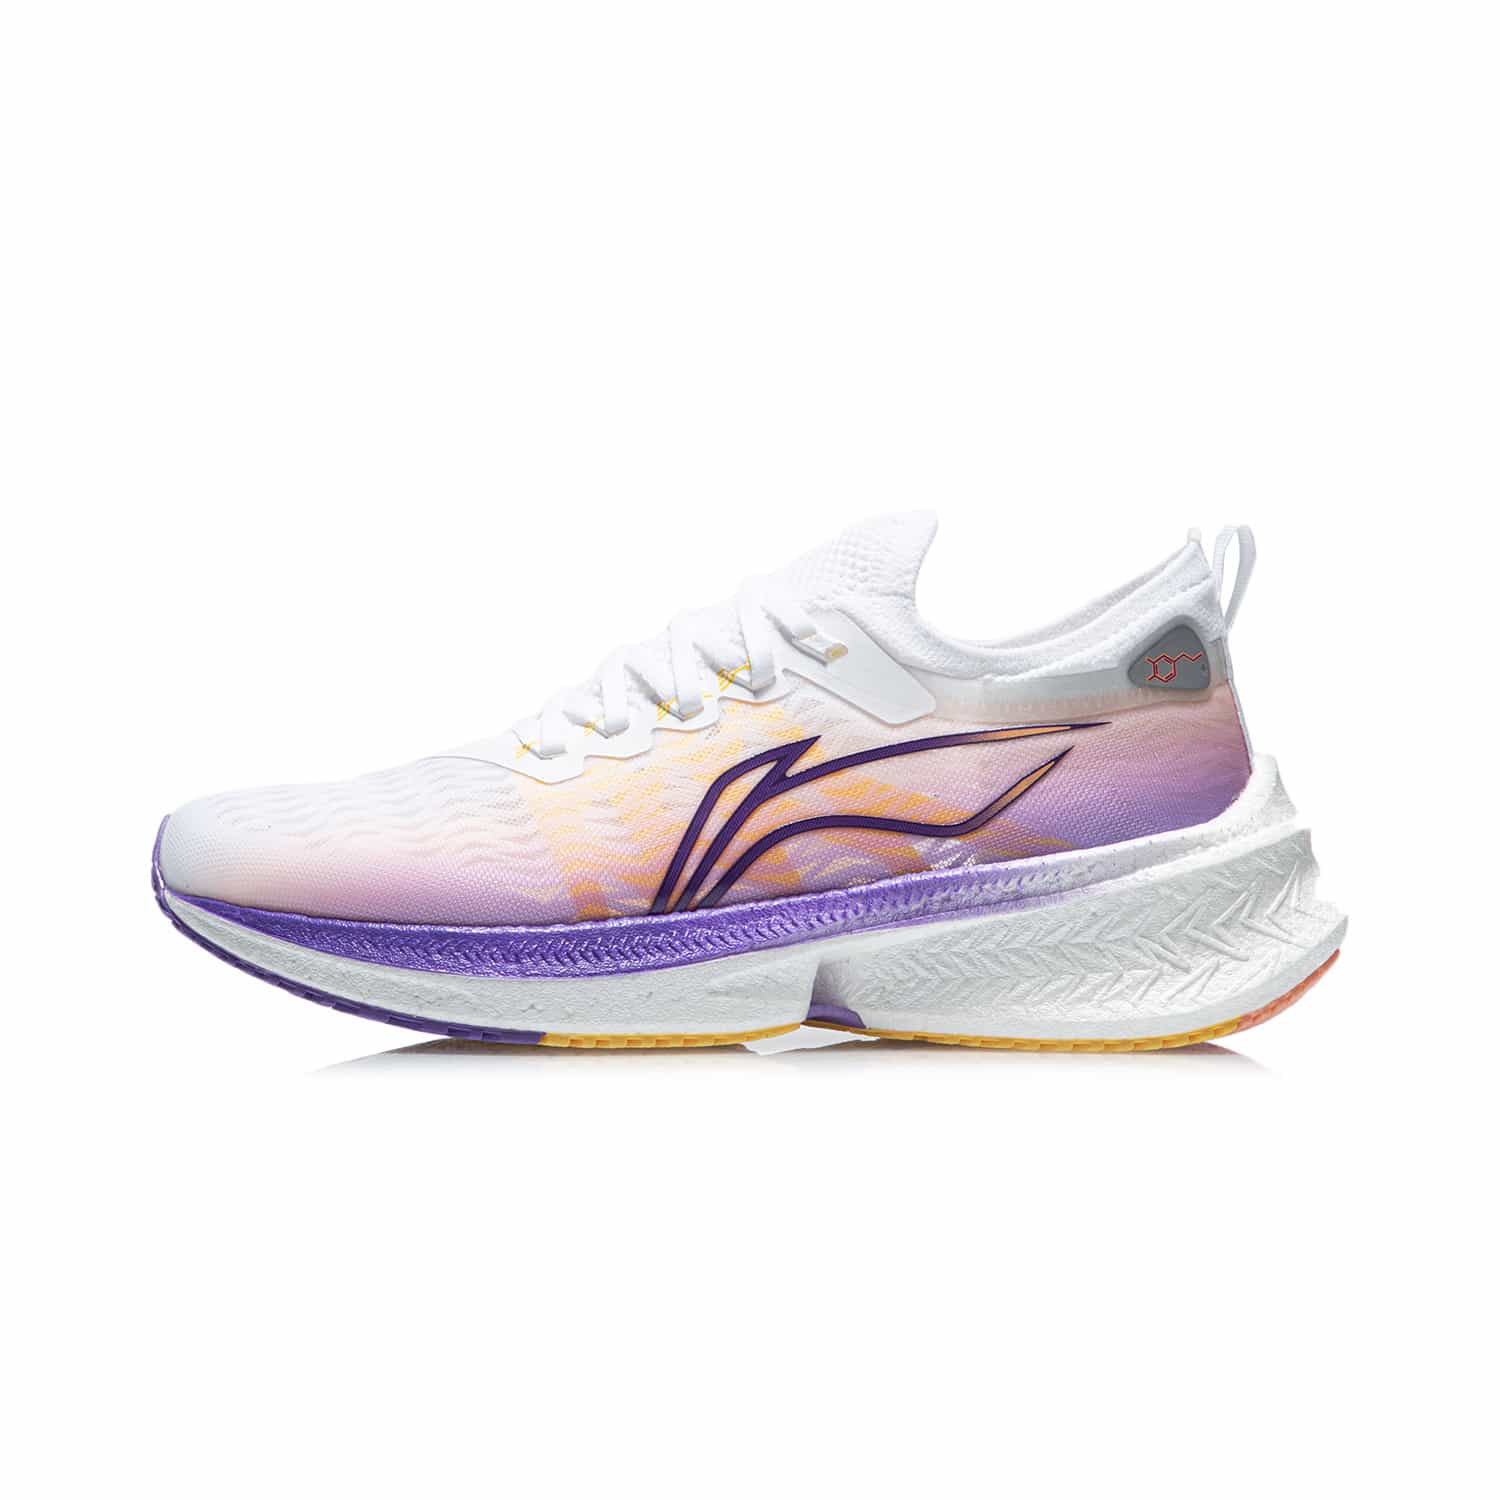 飛電Discovery女子競速跑鞋 - 標準白/螢光葡萄紫